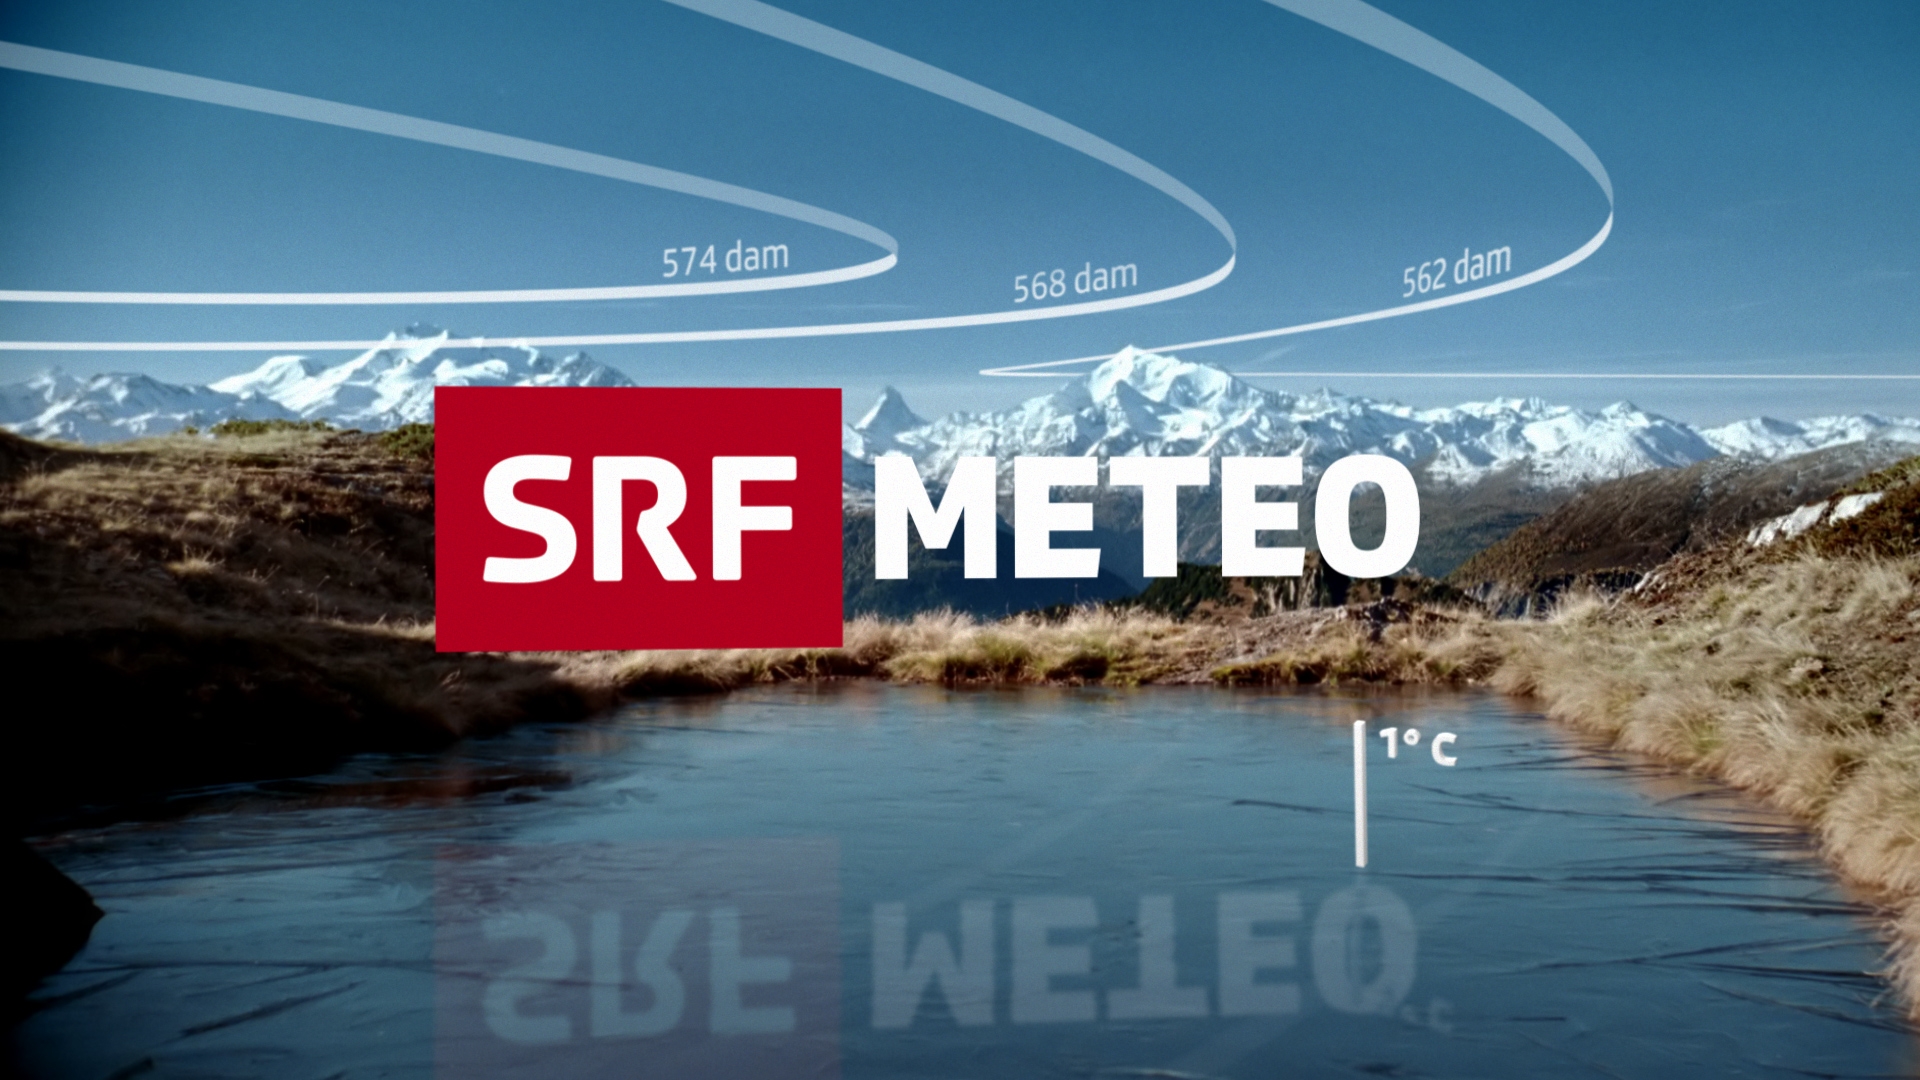 Schweizer Wetter Online Infos by Schweizerbergkristalle.ch